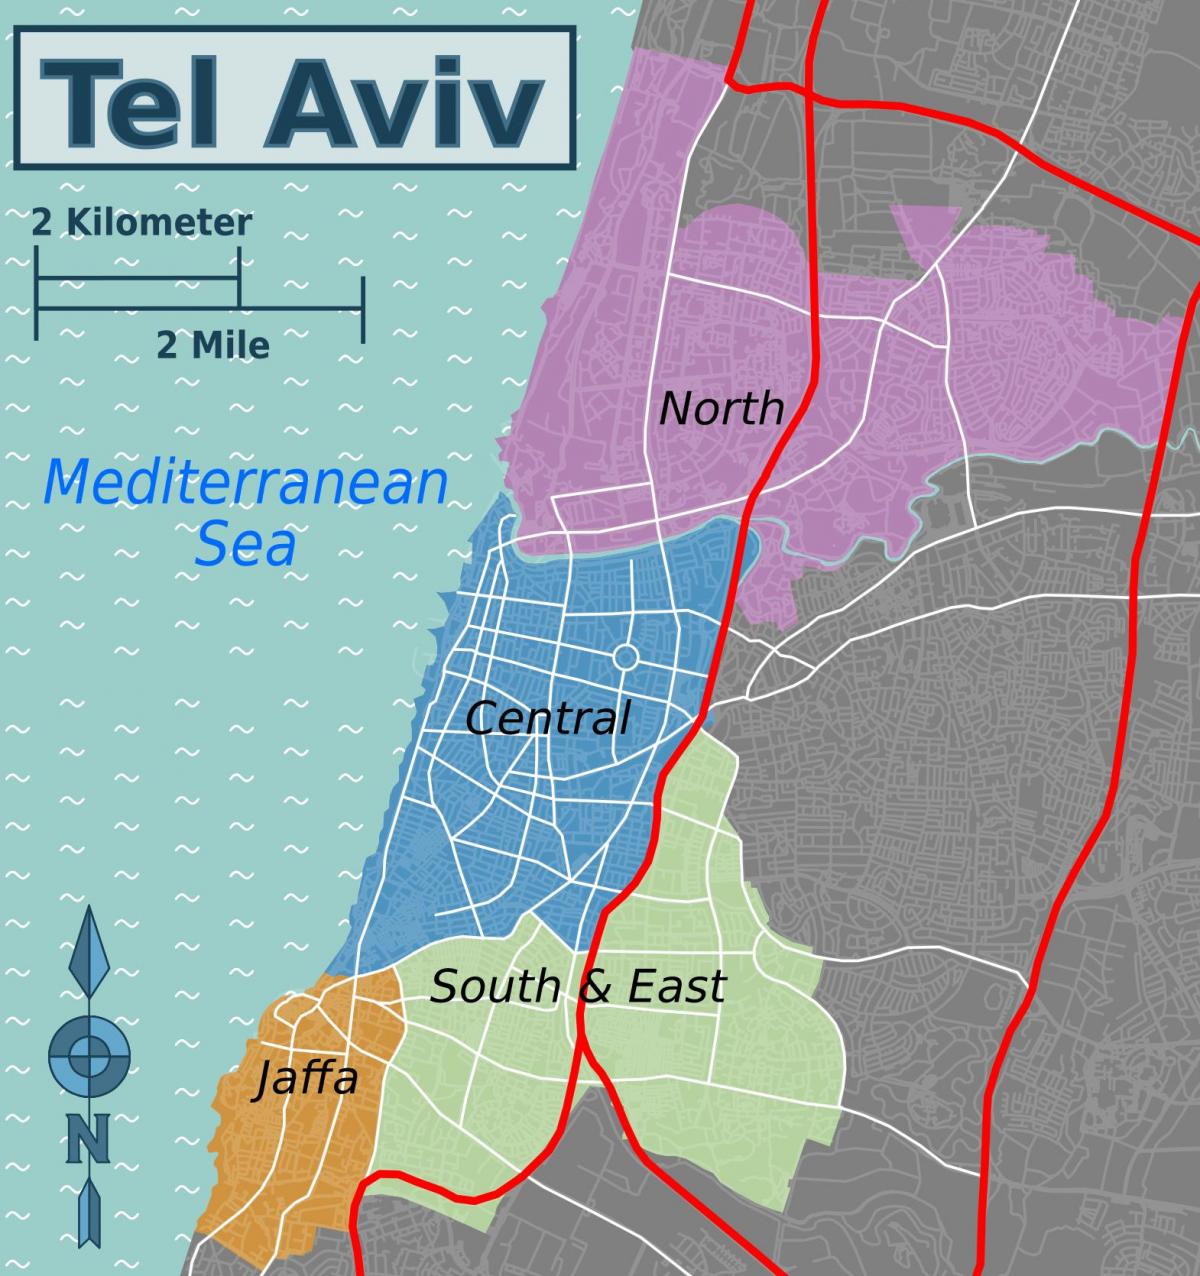 Mappa del quartiere di Tel Aviv